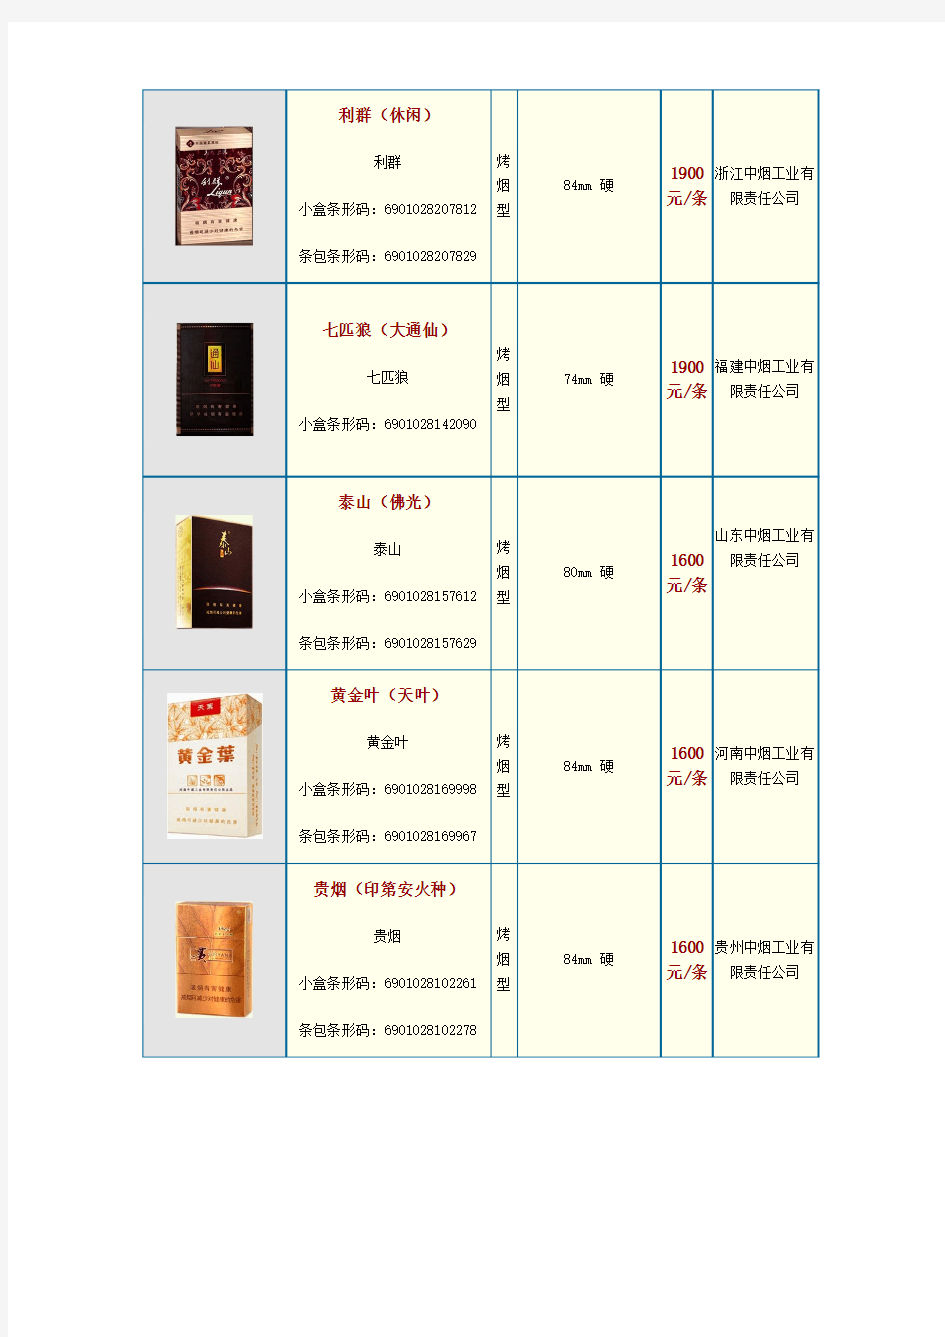 中国各类名烟价格表(900元以上并附图)